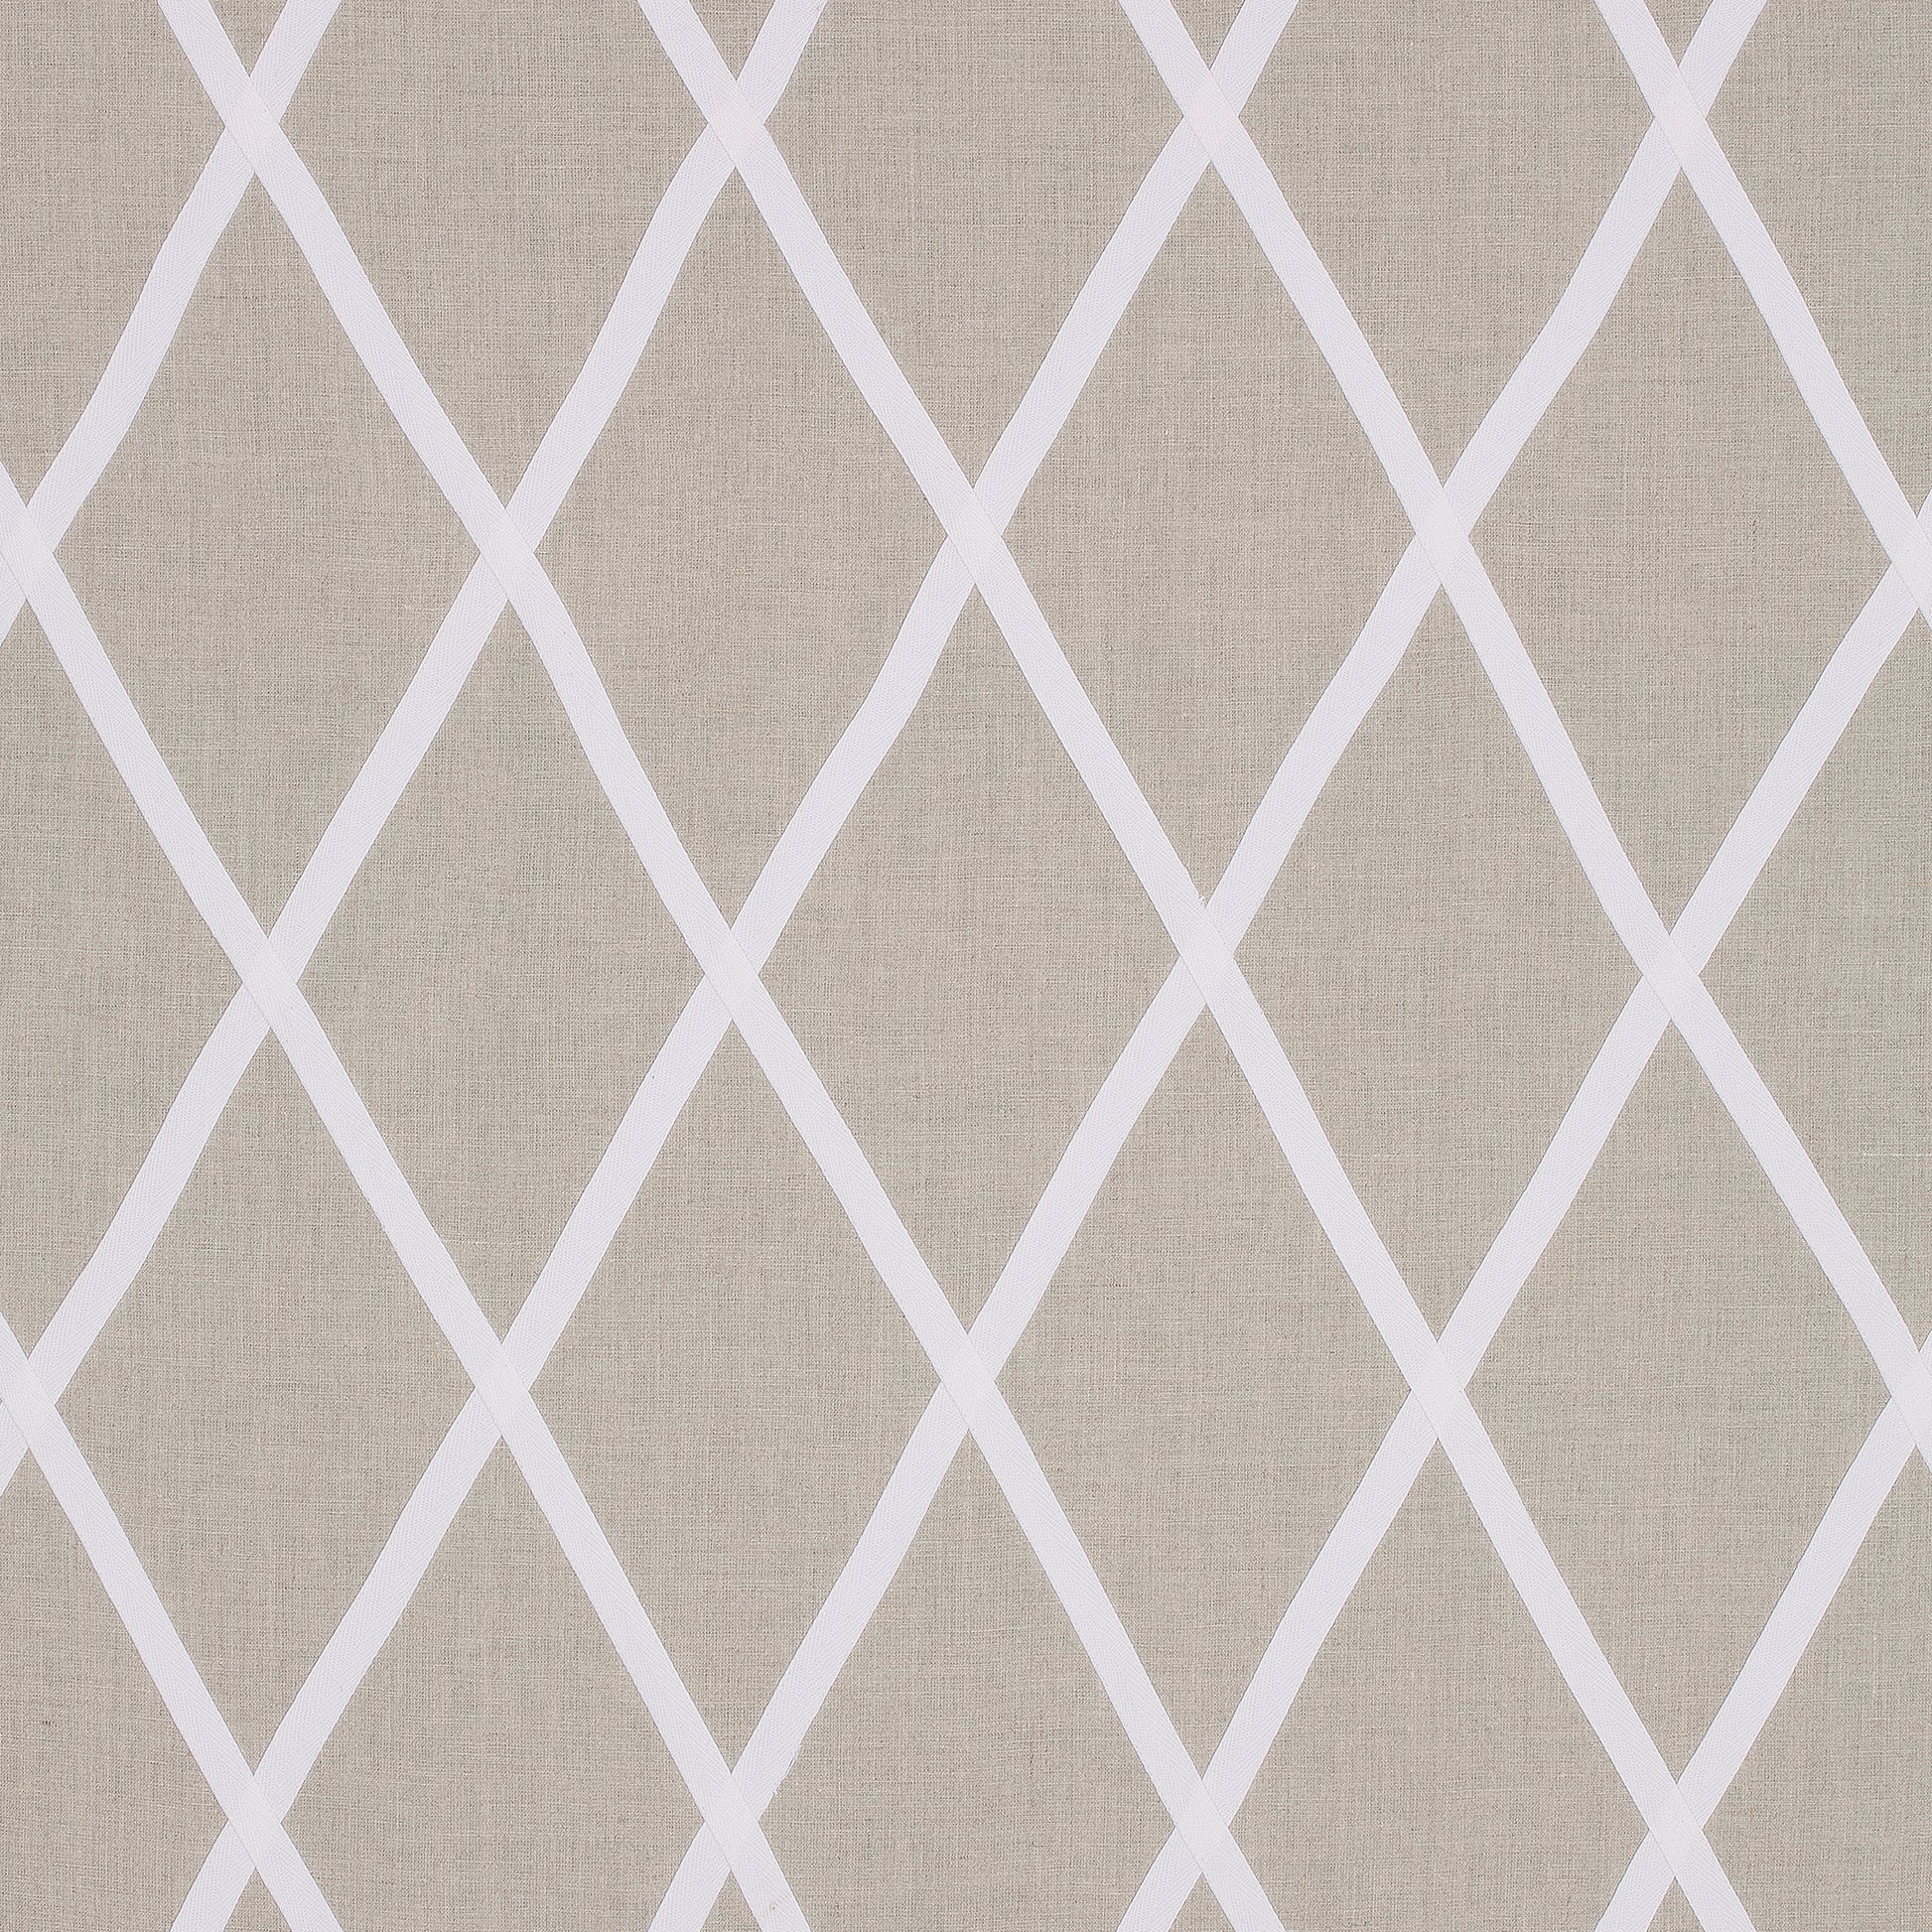 Purchase  Ann French Fabric Item AW78709  pattern name  Tarascon Trellis Applique